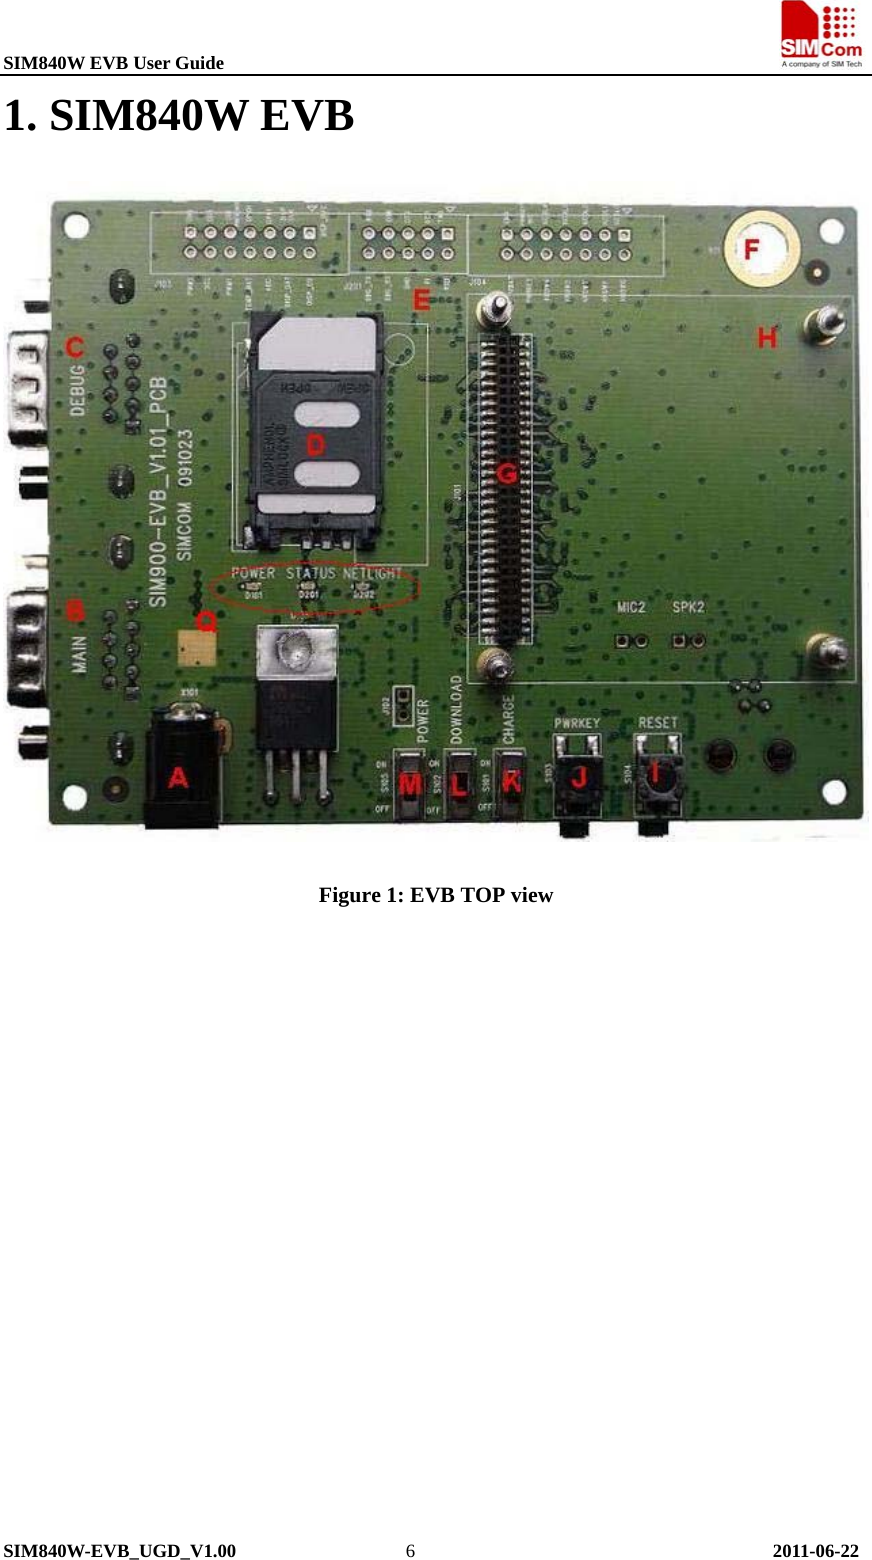 SIM840W EVB User Guide                                                             SIM840W-EVB_UGD_V1.00                  6                                      2011-06-22 1. SIM840W EVB  Figure 1: EVB TOP view 